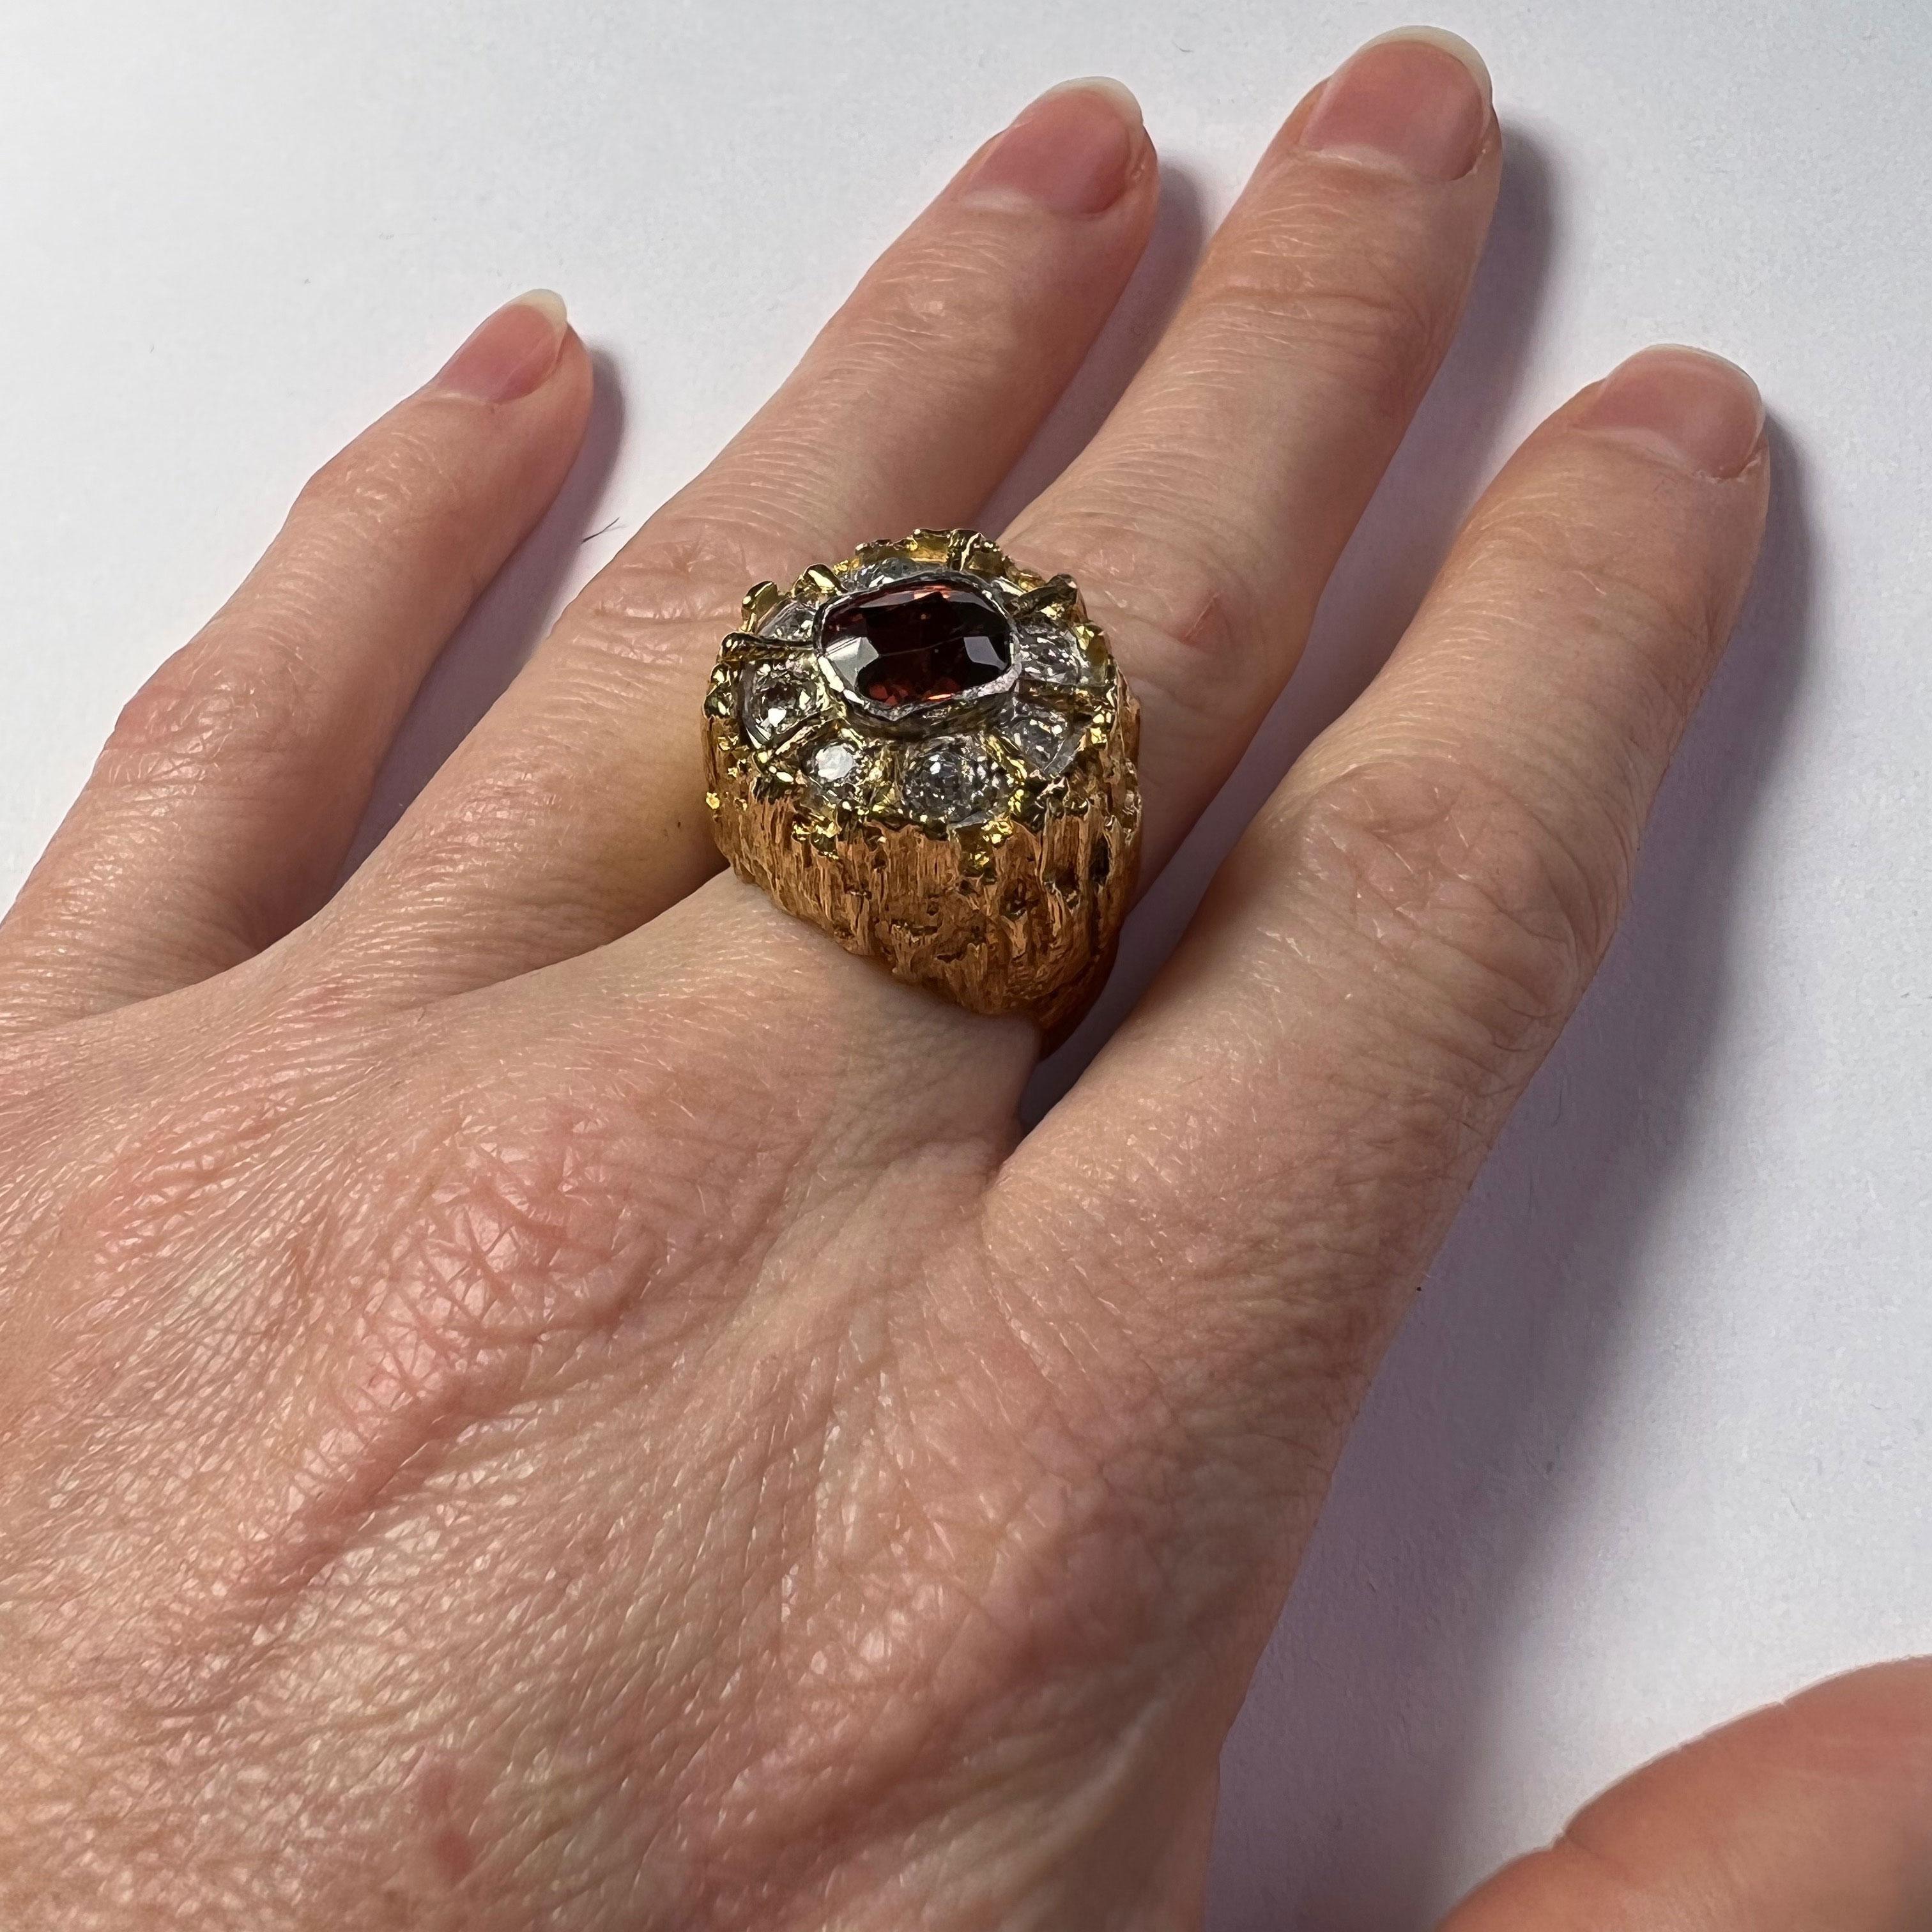 Ein organisch strukturierter Ring aus 18 Karat Gold, besetzt mit einem braunen Zirkon im Kissenschliff mit einem Gewicht von etwa 2,55 Karat, umgeben von acht Diamanten im Einzel- und Altschliff.

Der Ring ist mit 18 Karat Gold und dem Datum London,